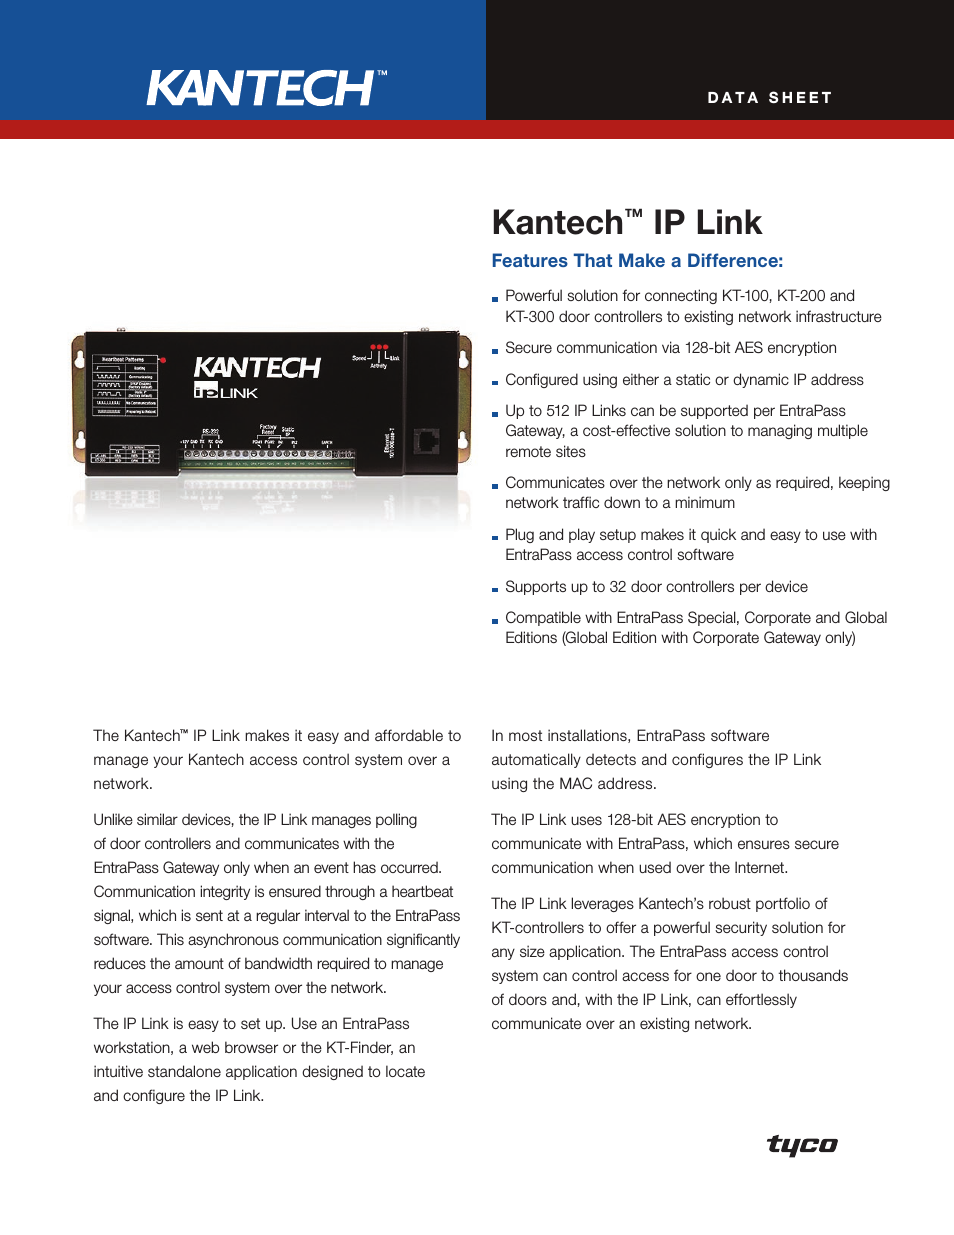 Kantech KT-200